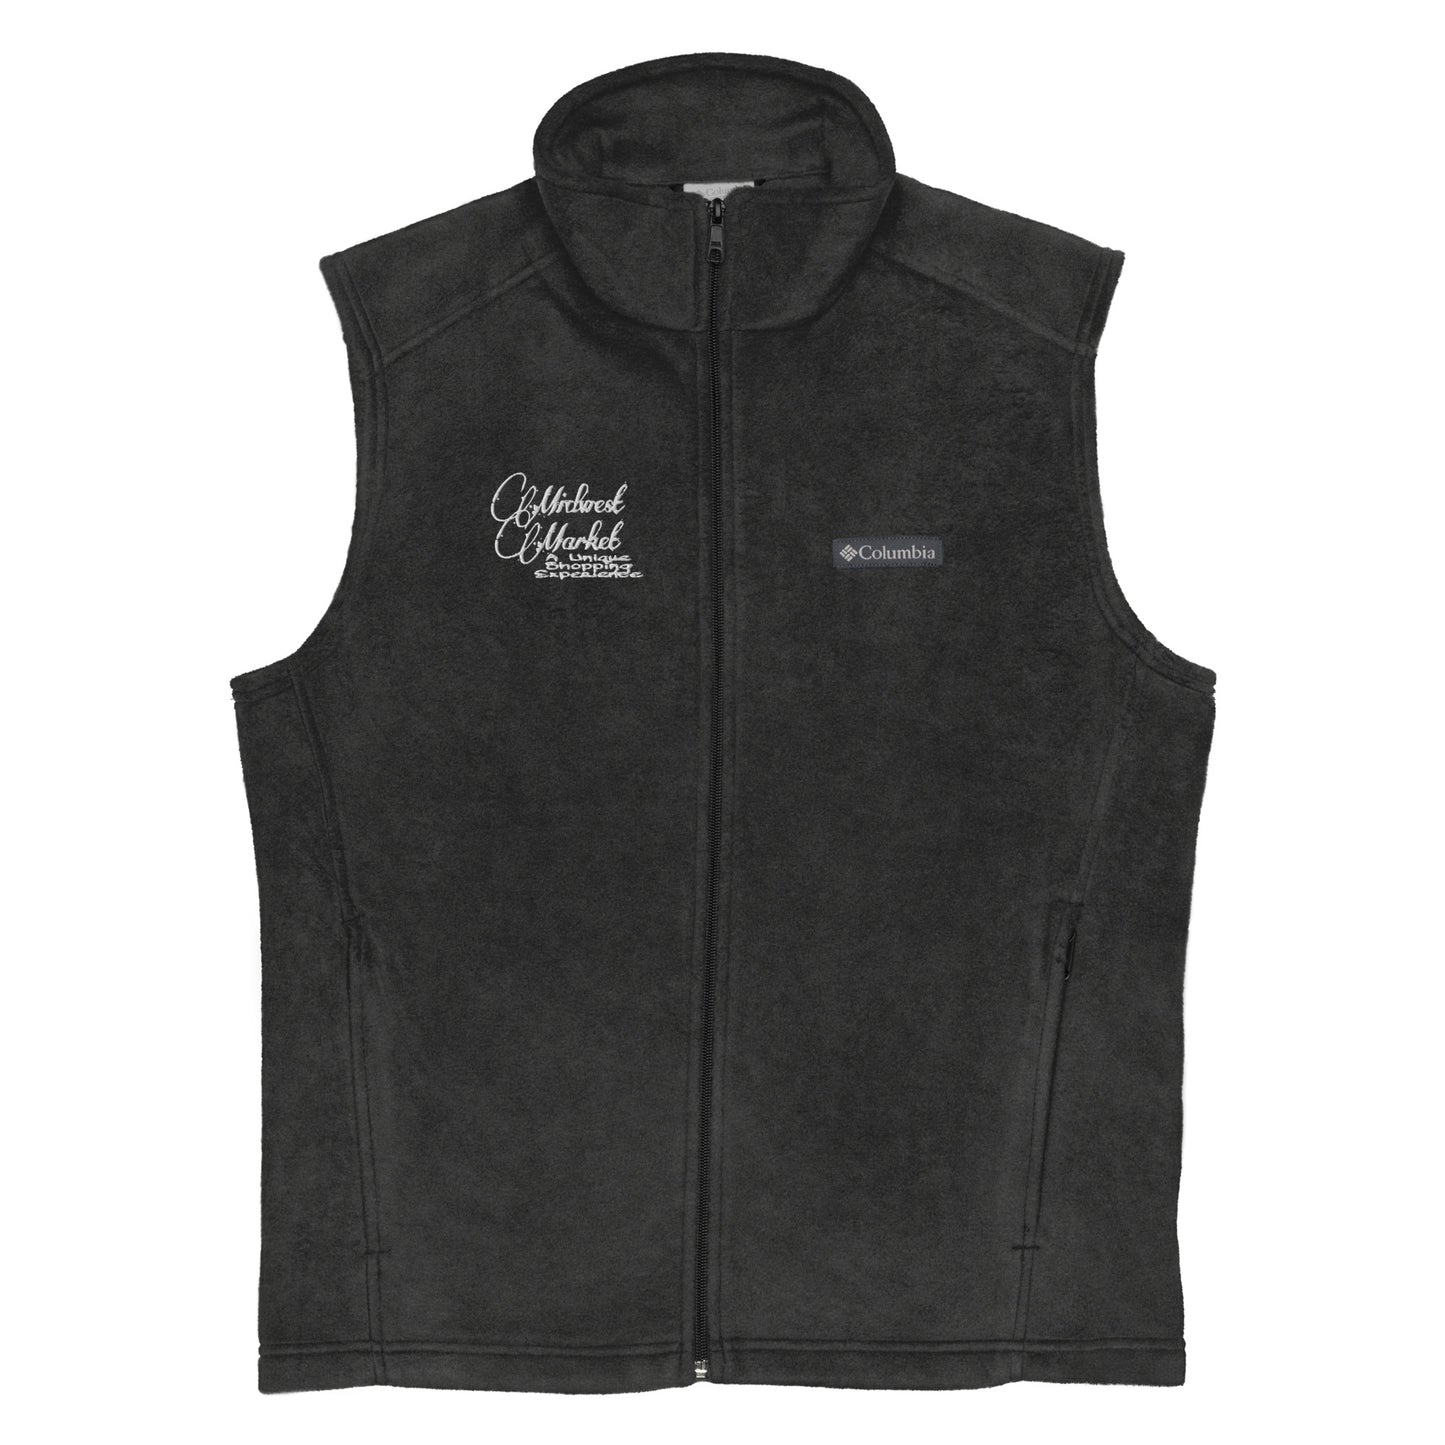 Men’s Columbia fleece vest MIDWEST MARKET EXCLUSIVE